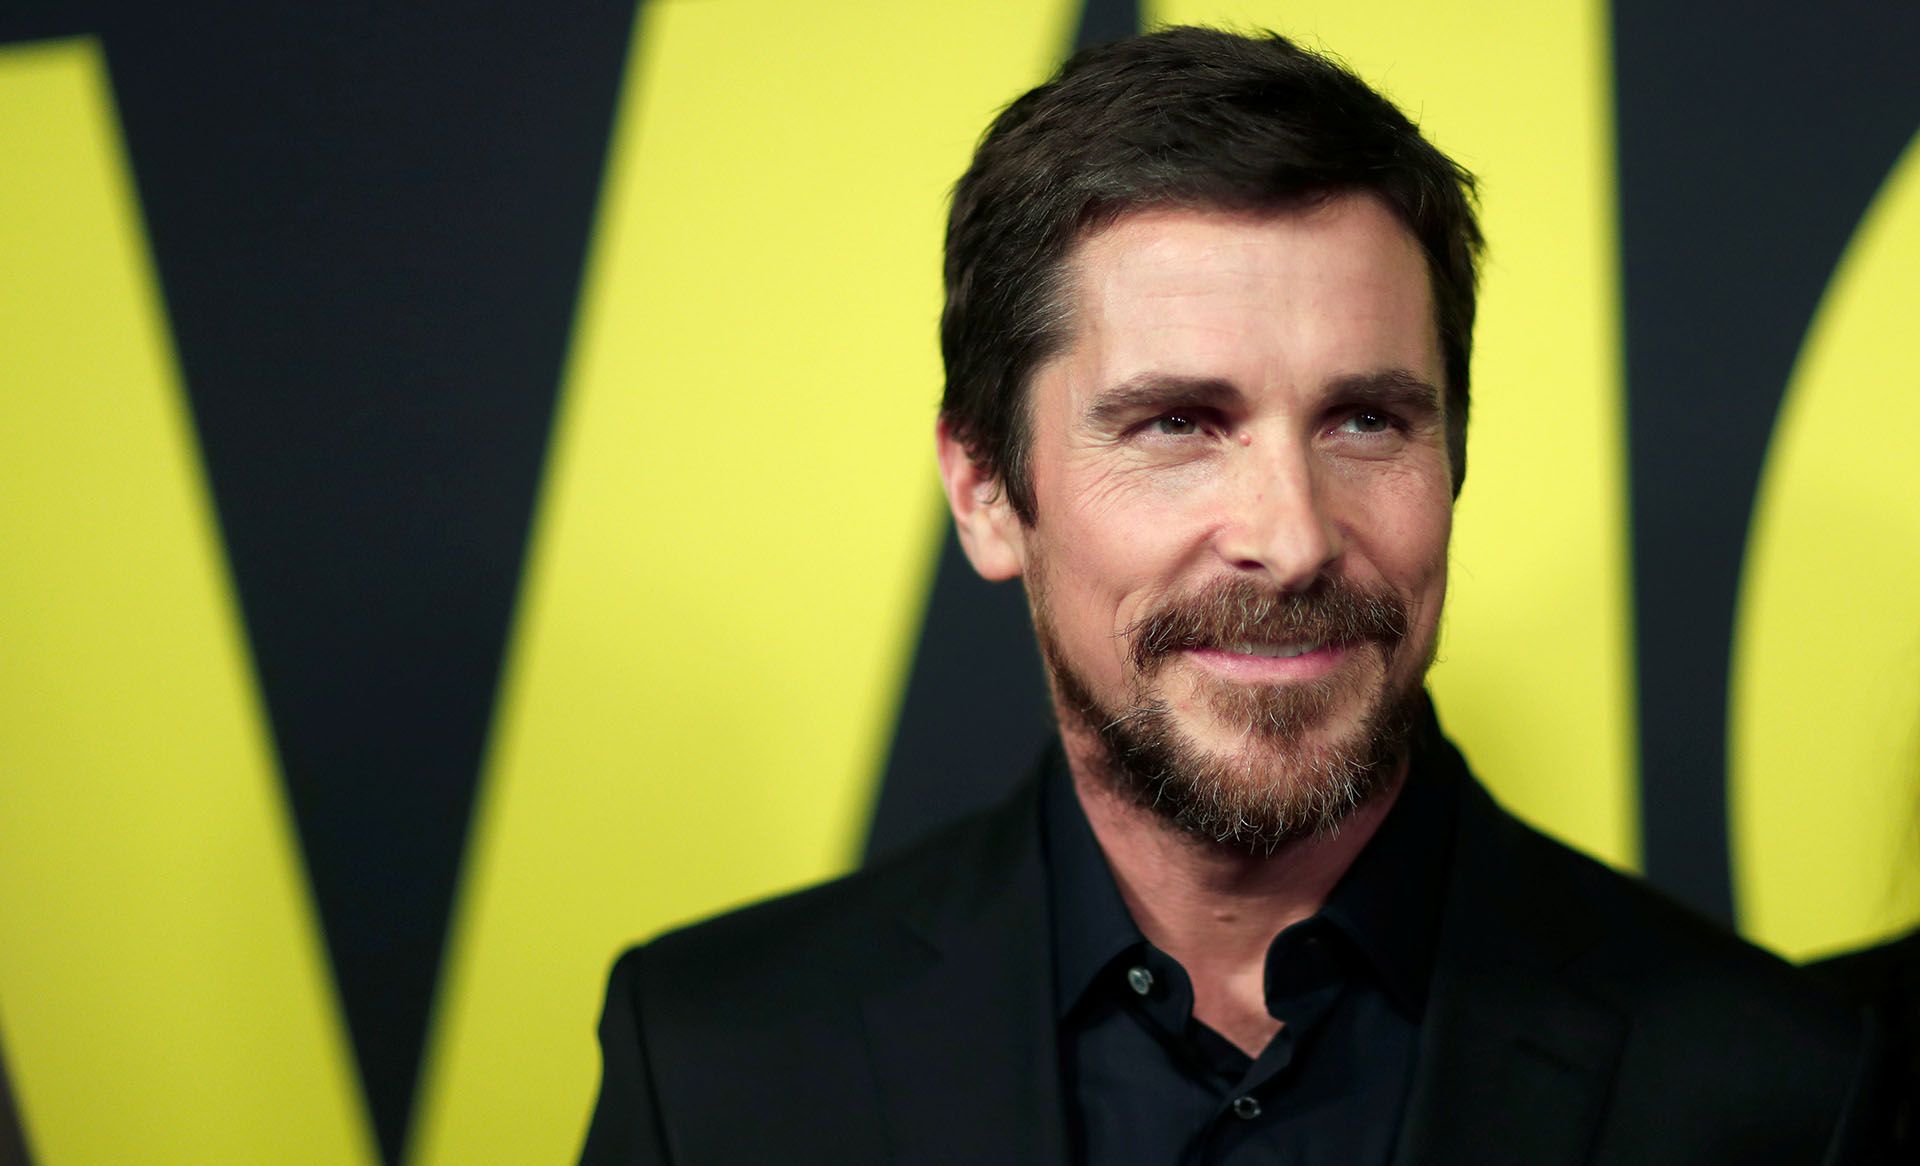 Christian Bale es uno de los mejores de su generación, con un talento indiscutible, pero tiene serios problemas para controlar su ira, generando que muchos actores se nieguen a trabajar con él (Reuters)